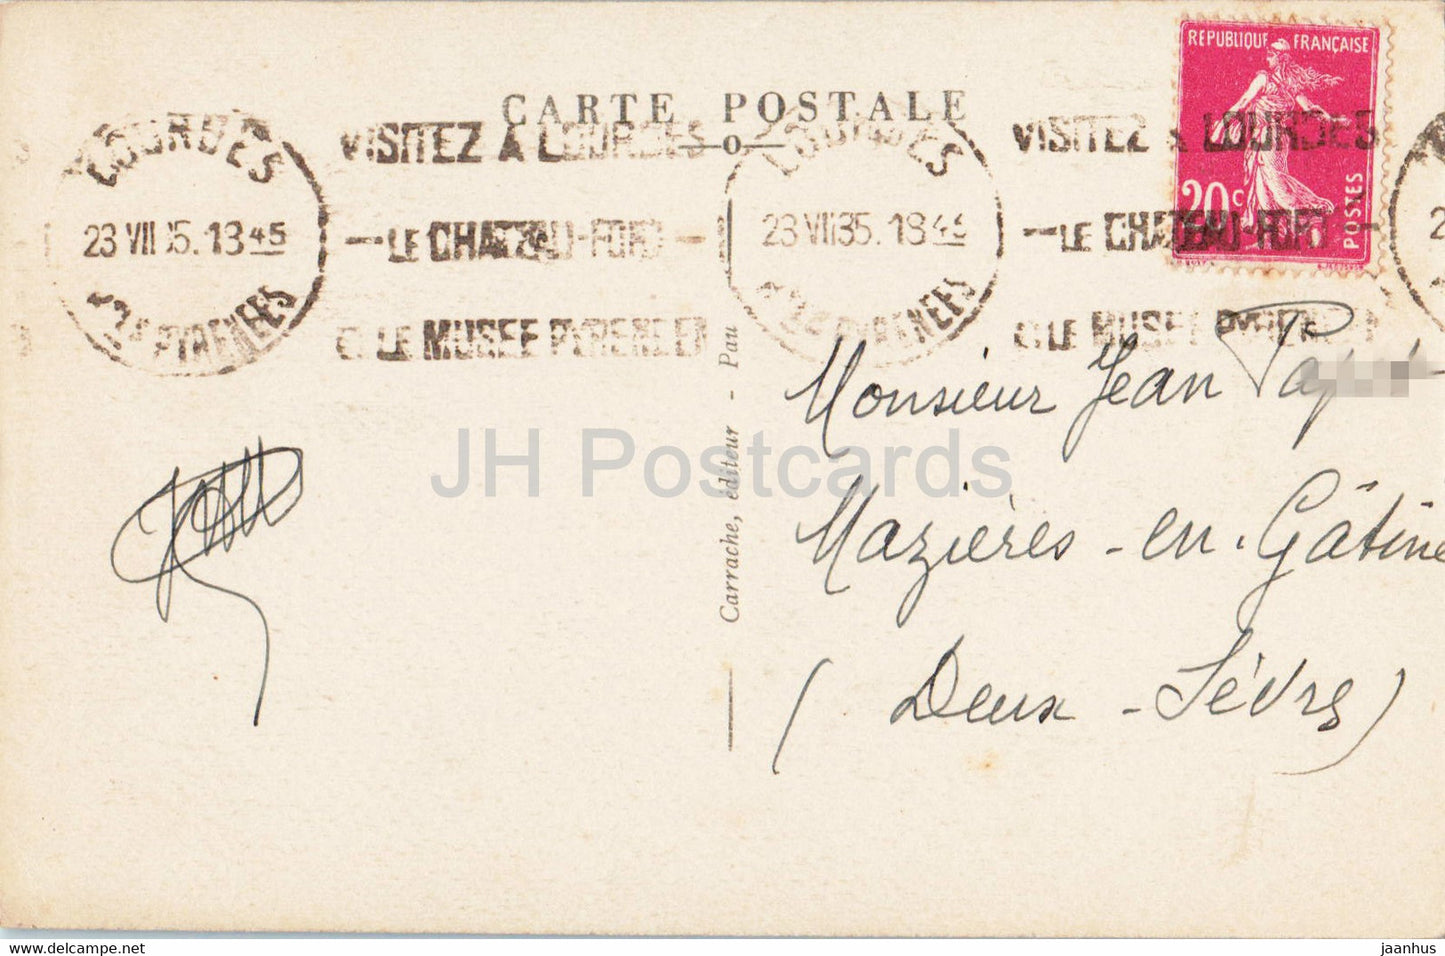 Lourdes - La Basilique - cathédrale - 70 - carte postale ancienne - 1935 - France - occasion